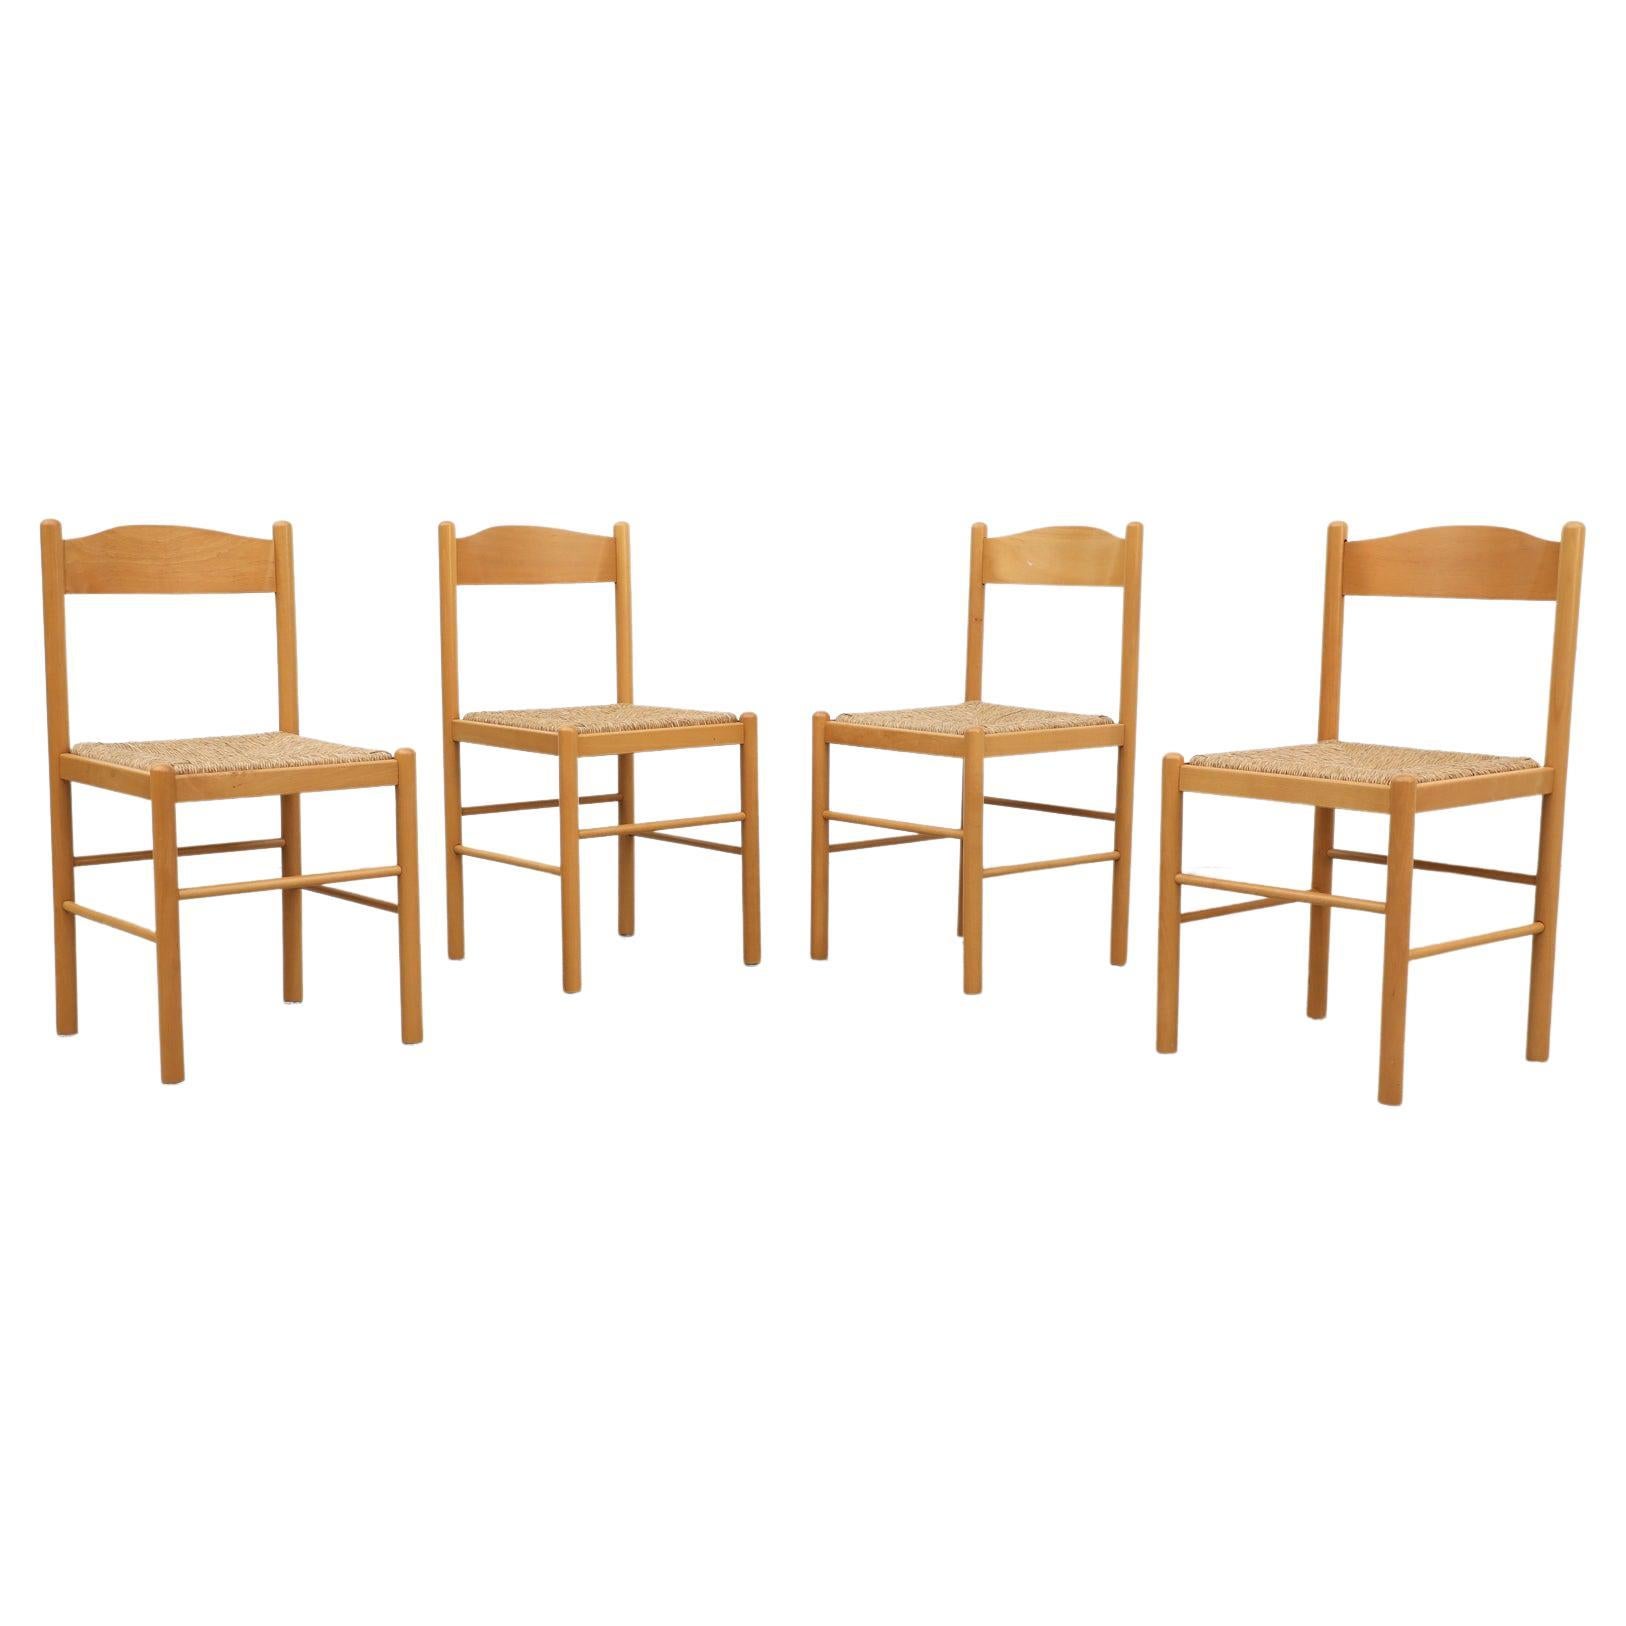 Satz von 4 blonden Esszimmerstühlen aus Holz im Vico Magistretti-Stil mit Binsen-Sitzen